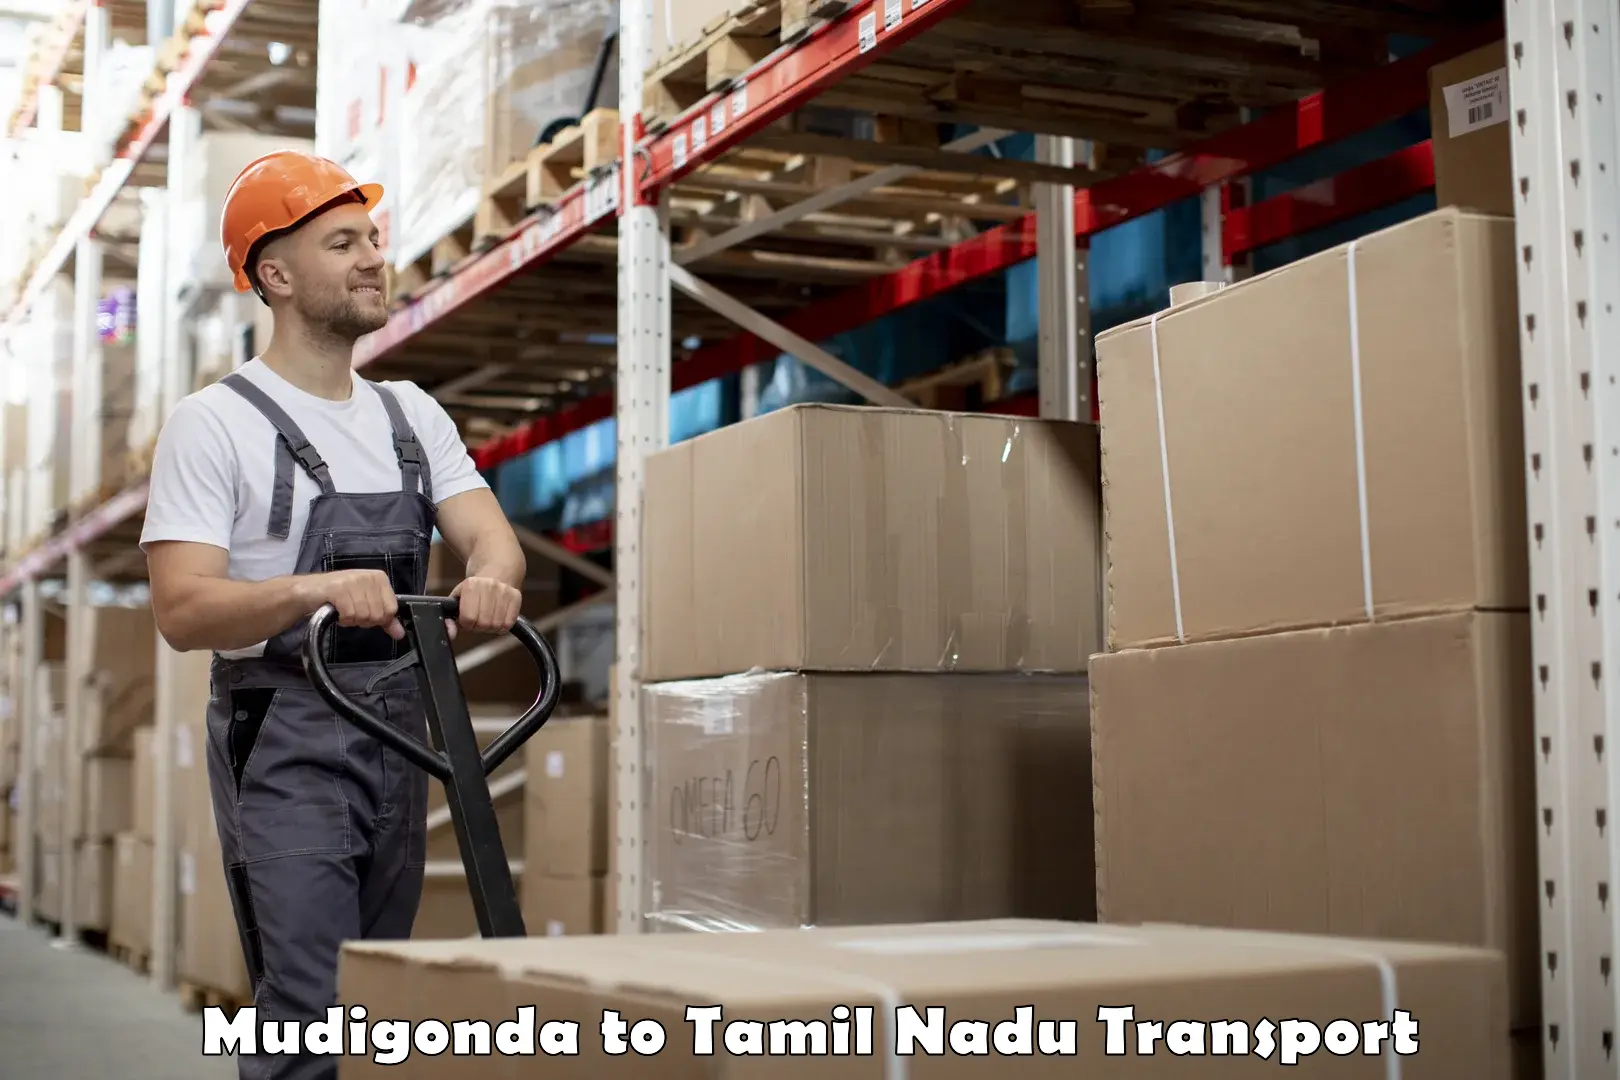 Container transport service Mudigonda to Gummidipoondi